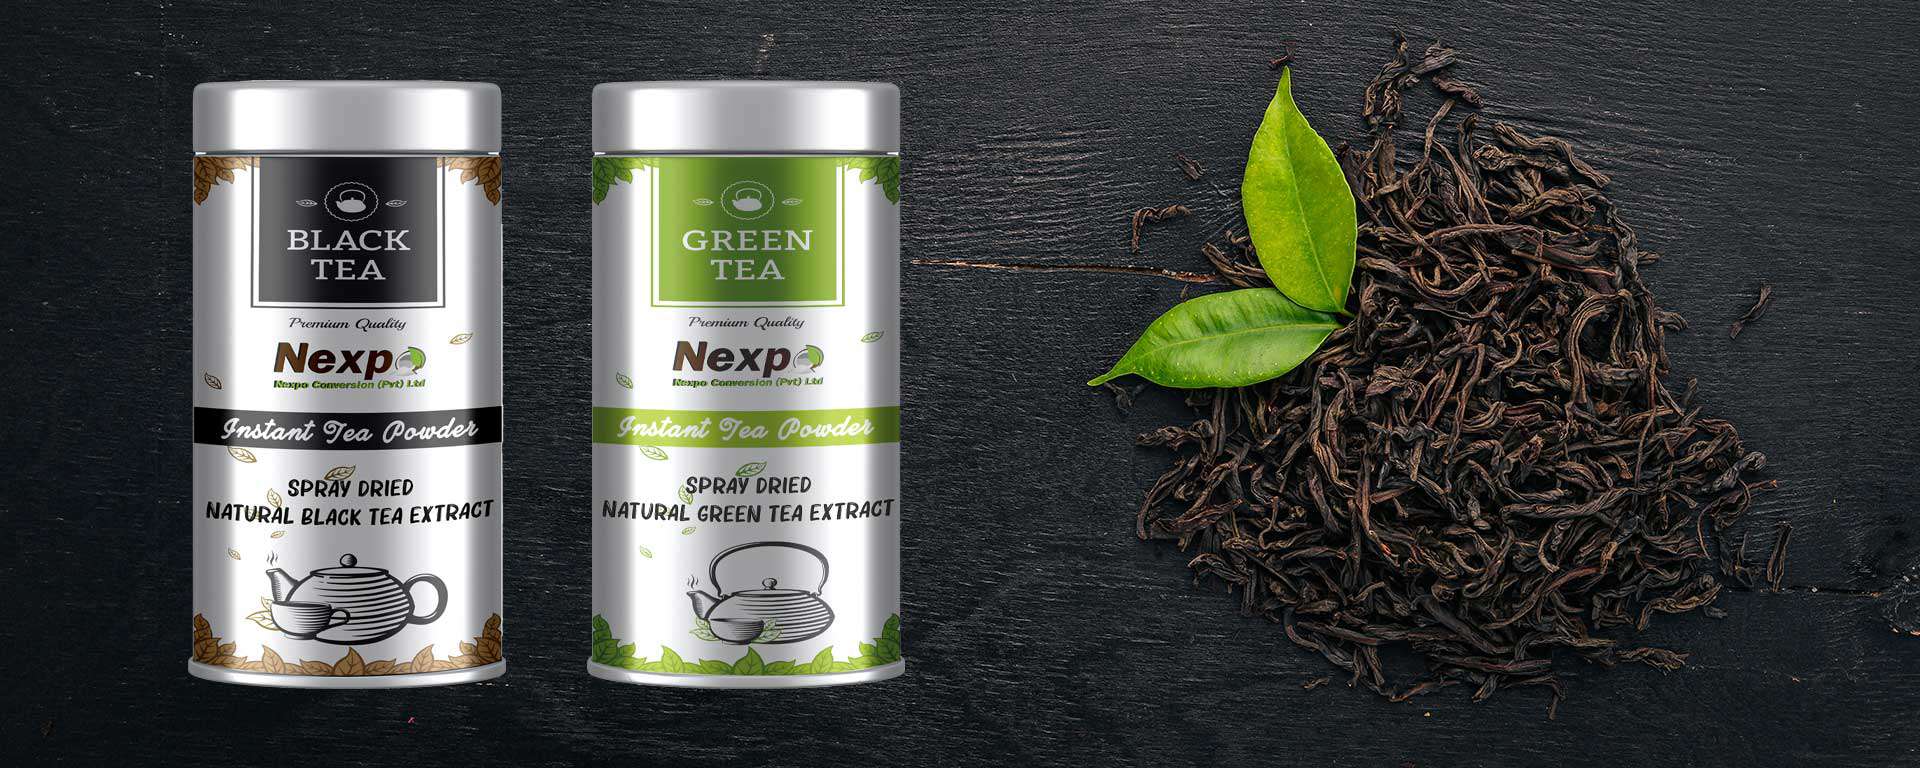 Nexpo Instant Ceylon Tea Powder